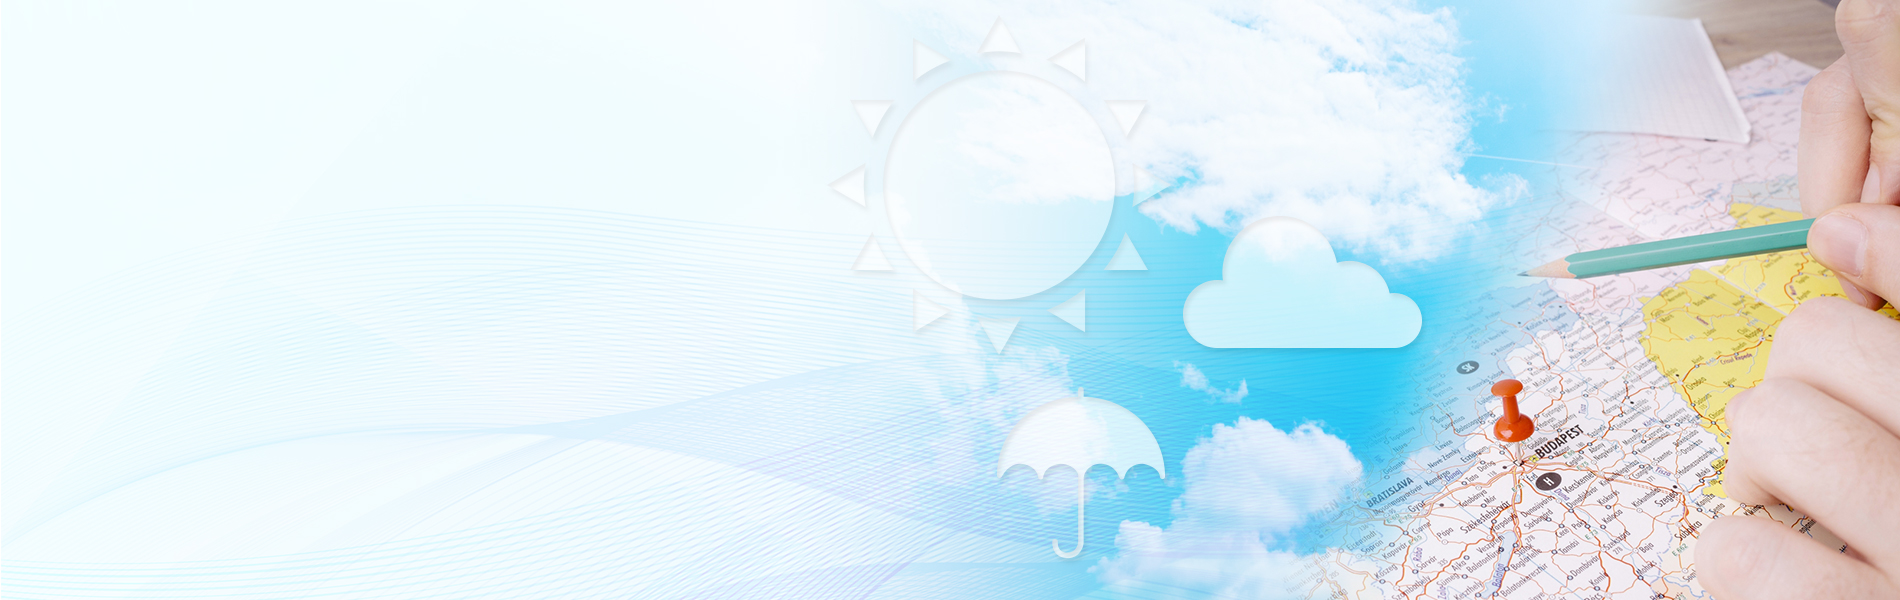 気象情報システム 雨量計や風速計などの気象測器のデータおよび気象庁から配信されている気象データを収集